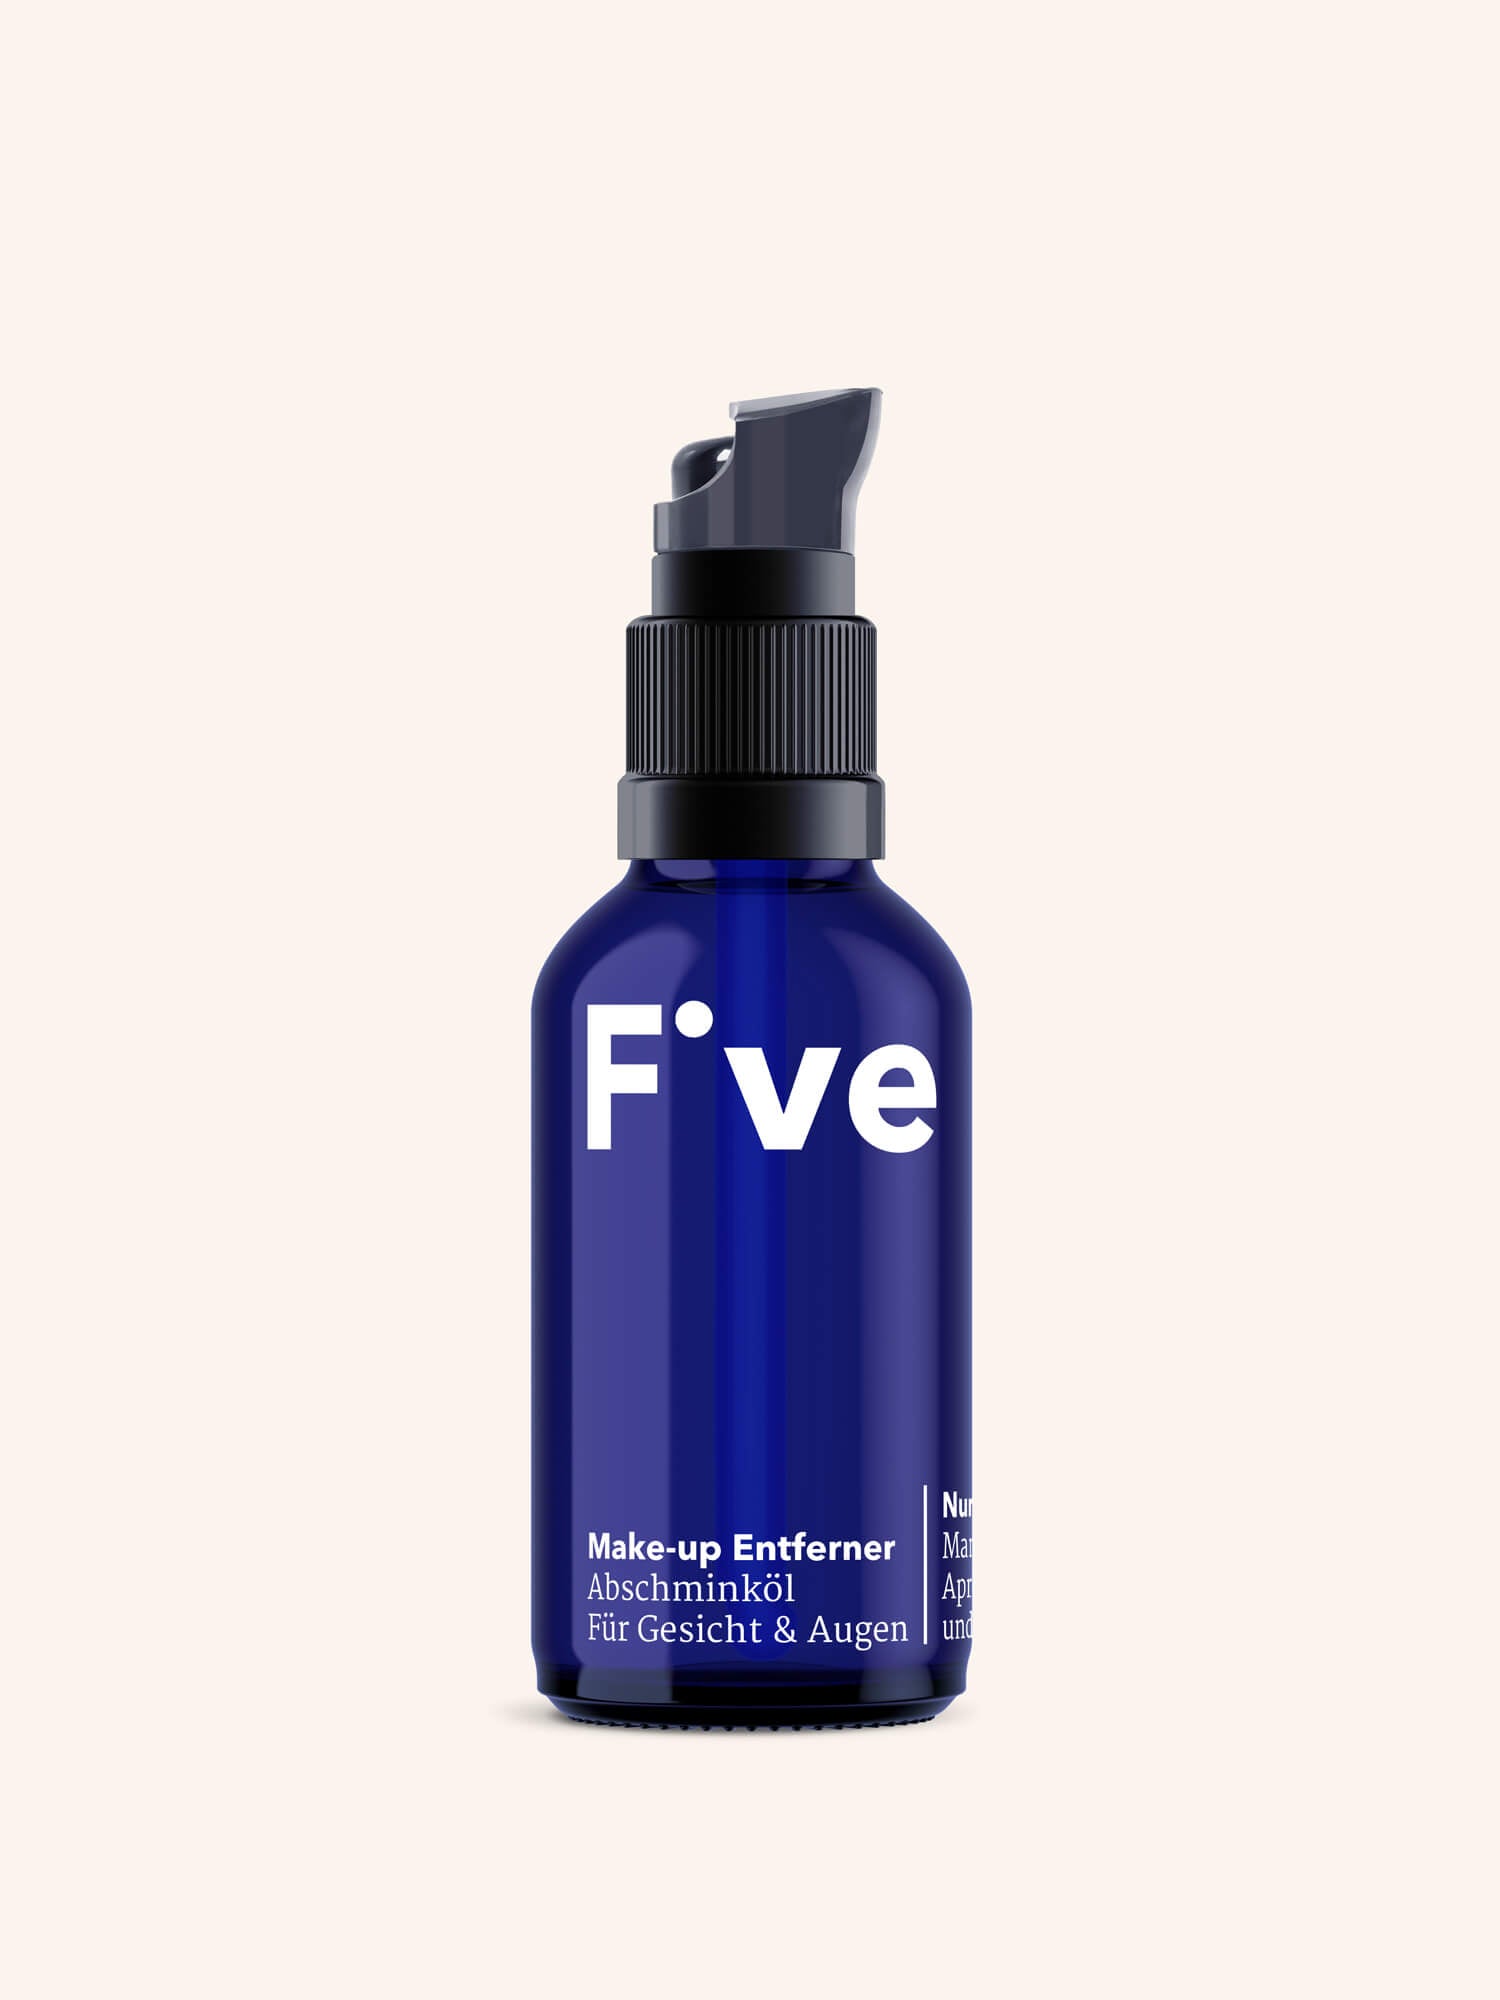 FIVE Make-Up Entferner: mildes Abschminköl | Five Skincare